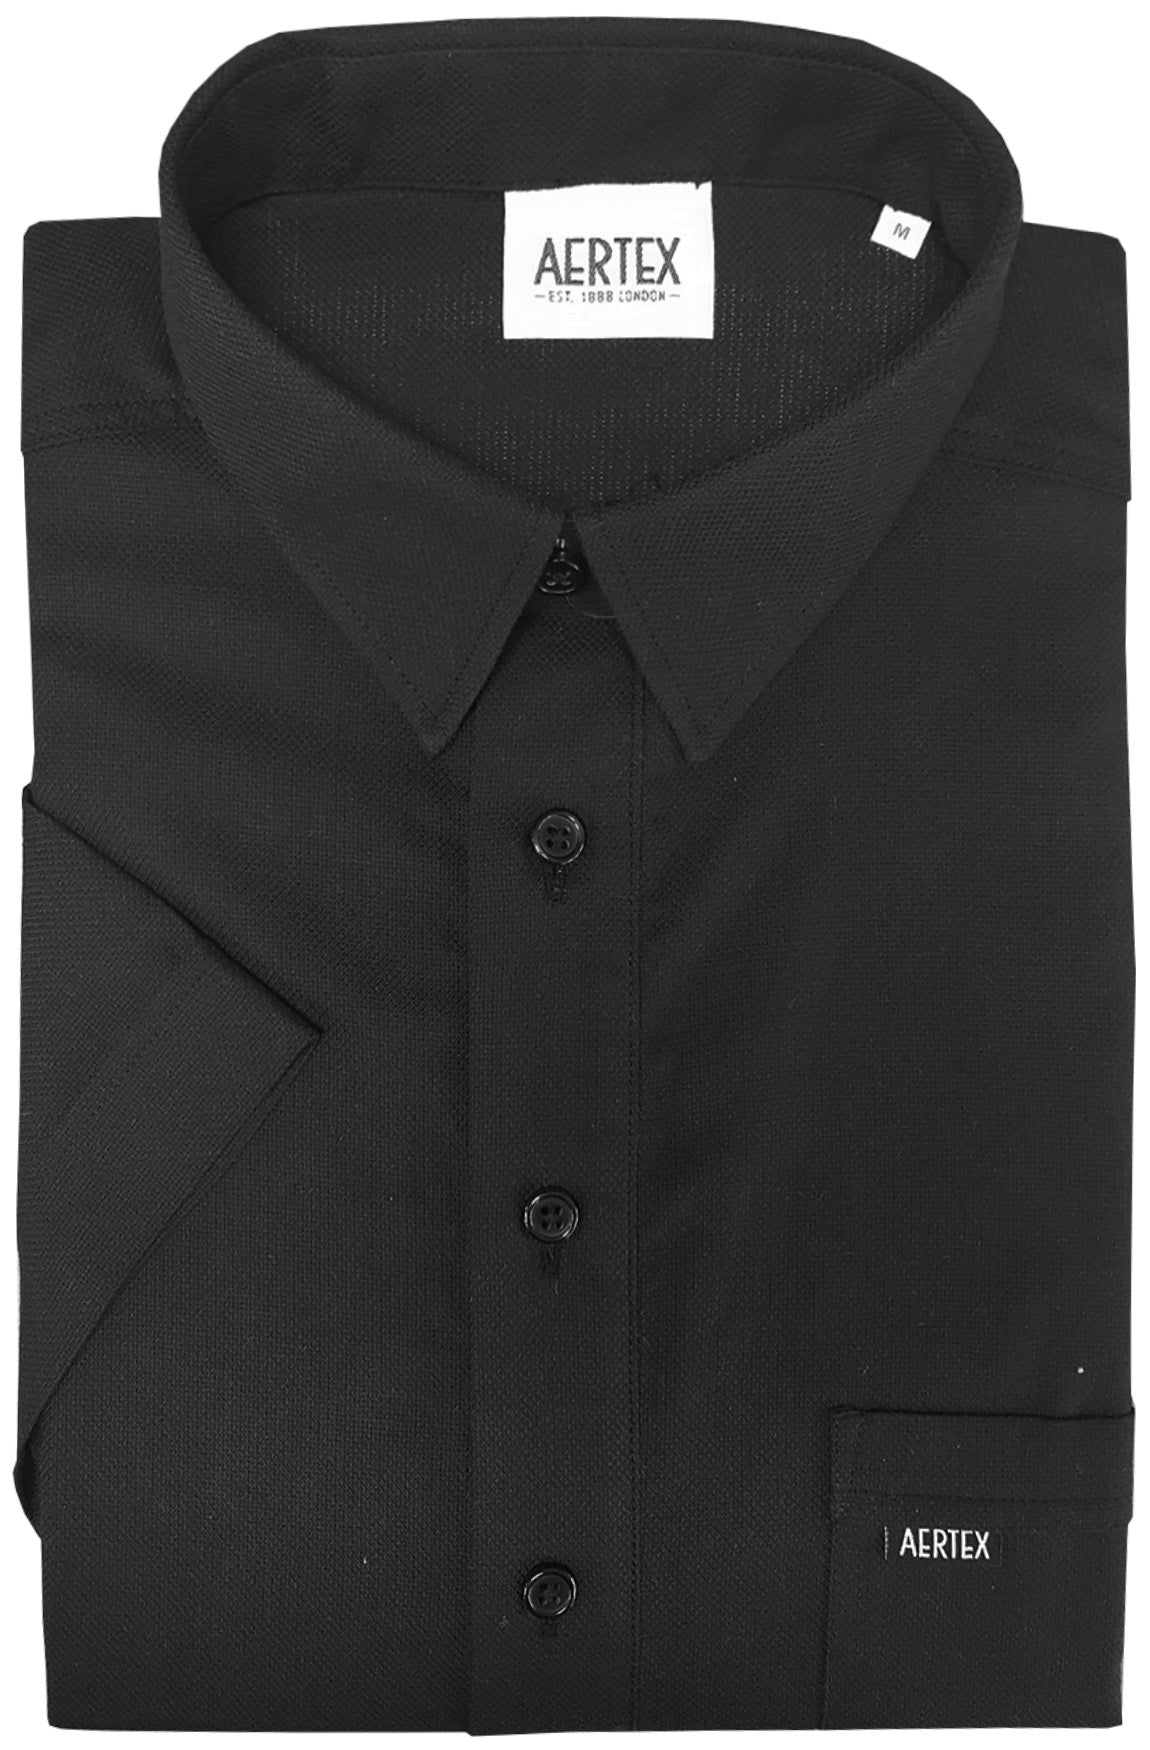 Aertex FYI175 Taunton Polo - Thomson's Suits Ltd - Black - S - 40971